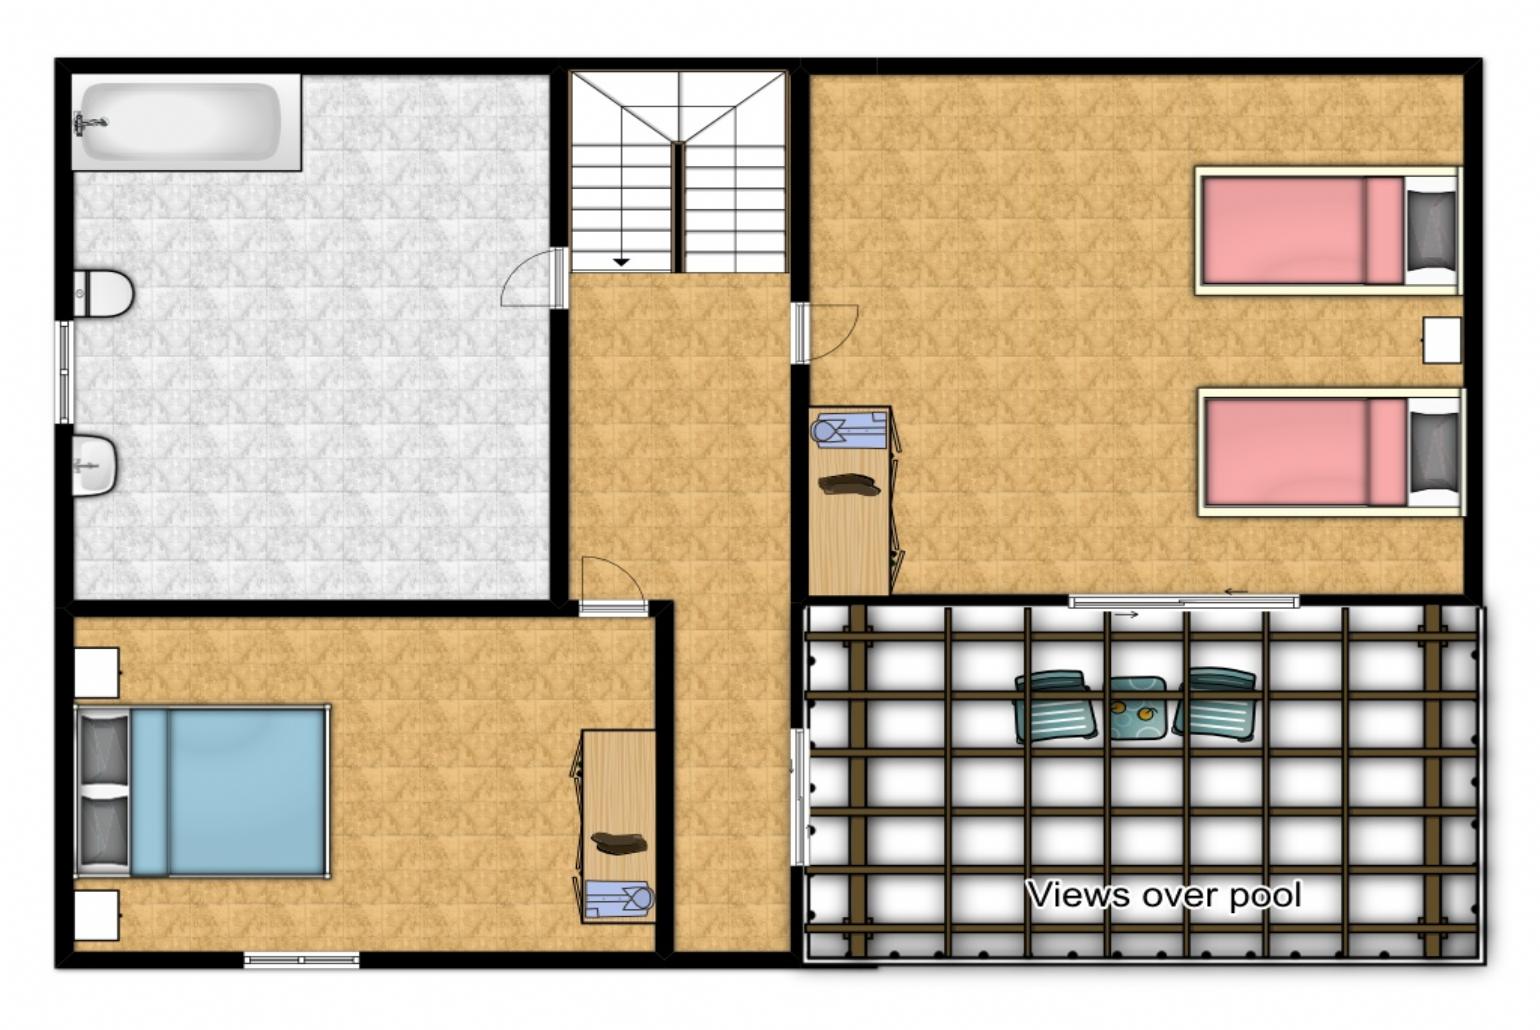 Floor Plan: First Floor